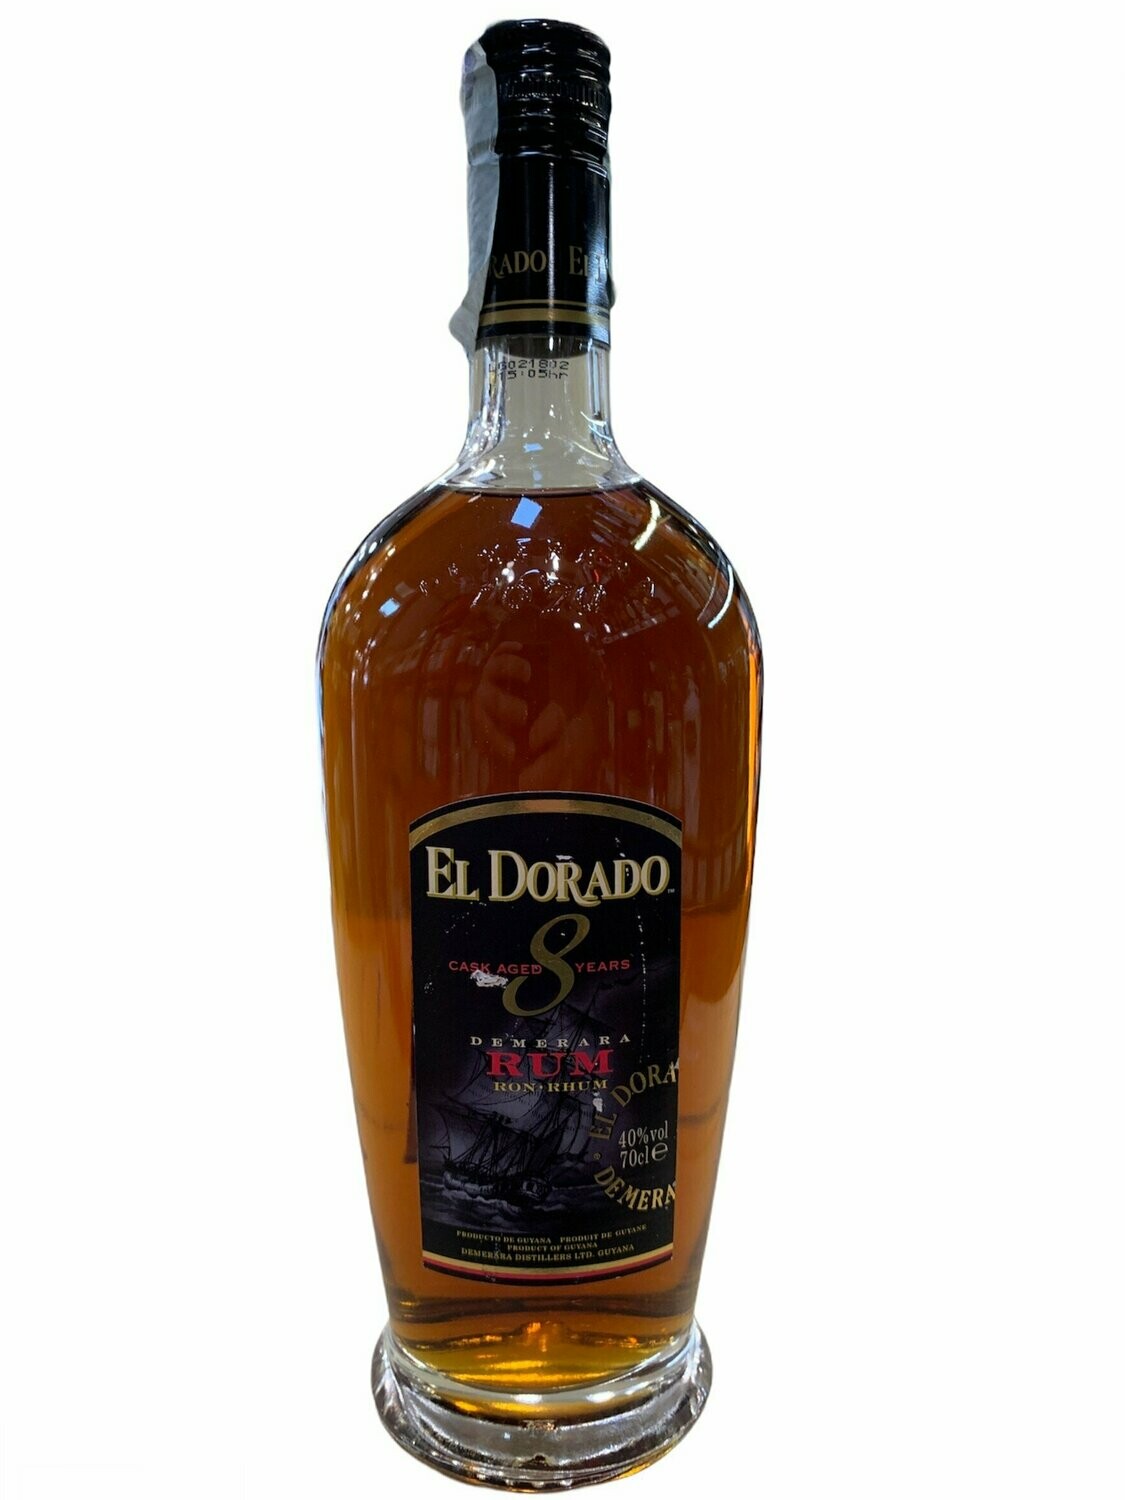 El Dorado Rum 8yo 70cl 40% "Demerara Distillers Ltd"